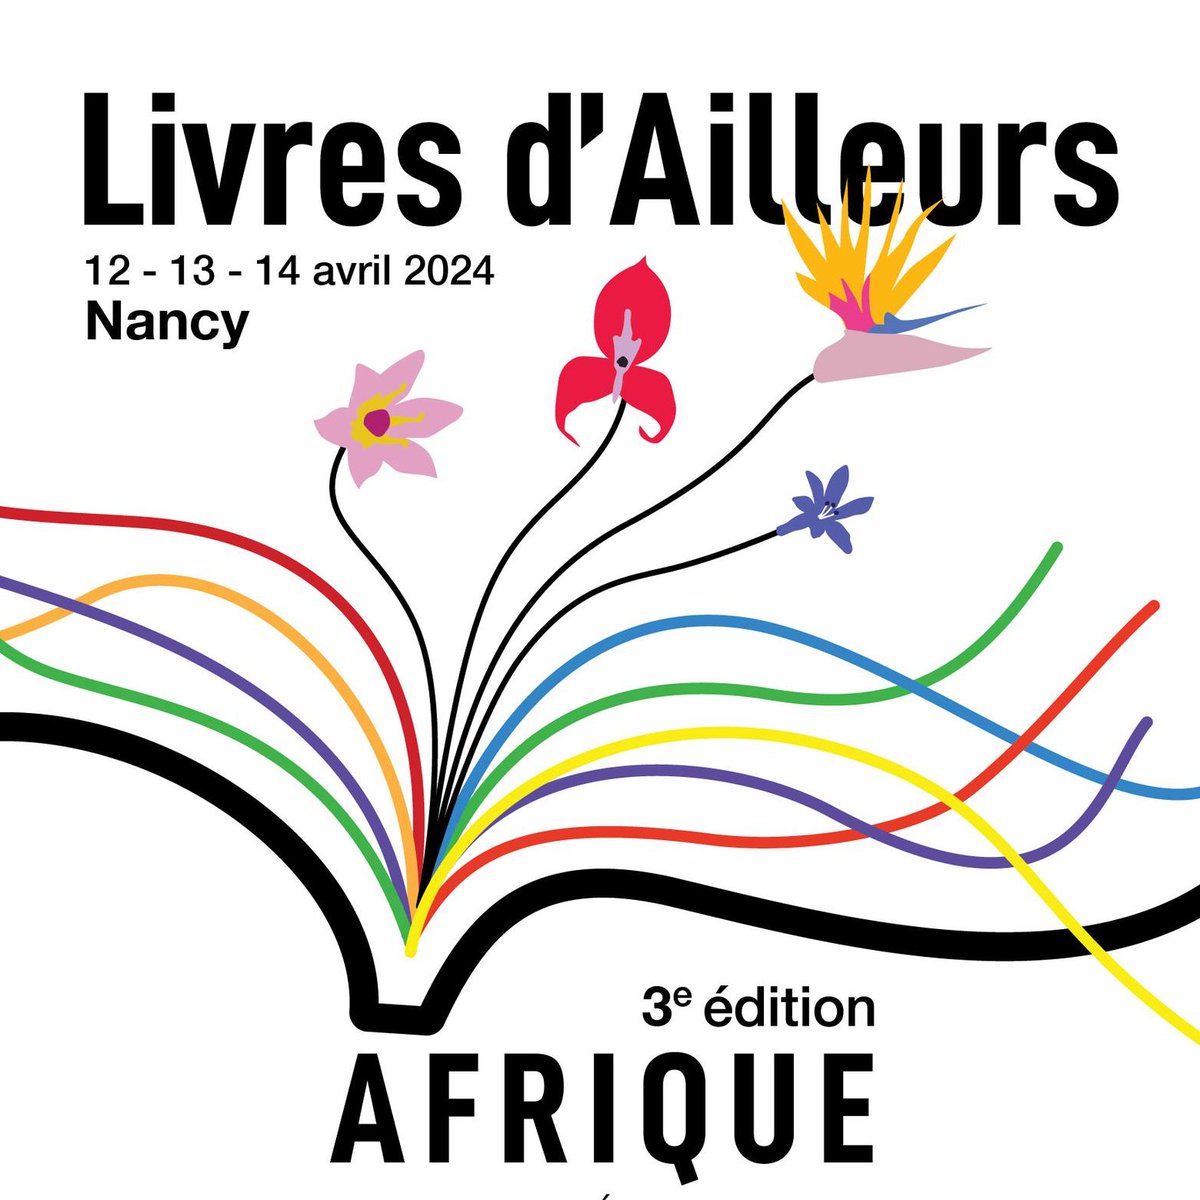 #idéesortie 📚🌍🌸 RDV à ne pas manquer cette fin de semaine, la 3e édition du salon #littéraire Livres d'Ailleurs se tient DU 12 AU 14 AVRIL au Palais du gouvernement à @VilledeNancy. Cette année, l'Afrique est à l'honneur, sous la présidence de l'autrice sénégalaise Ken Bugul.